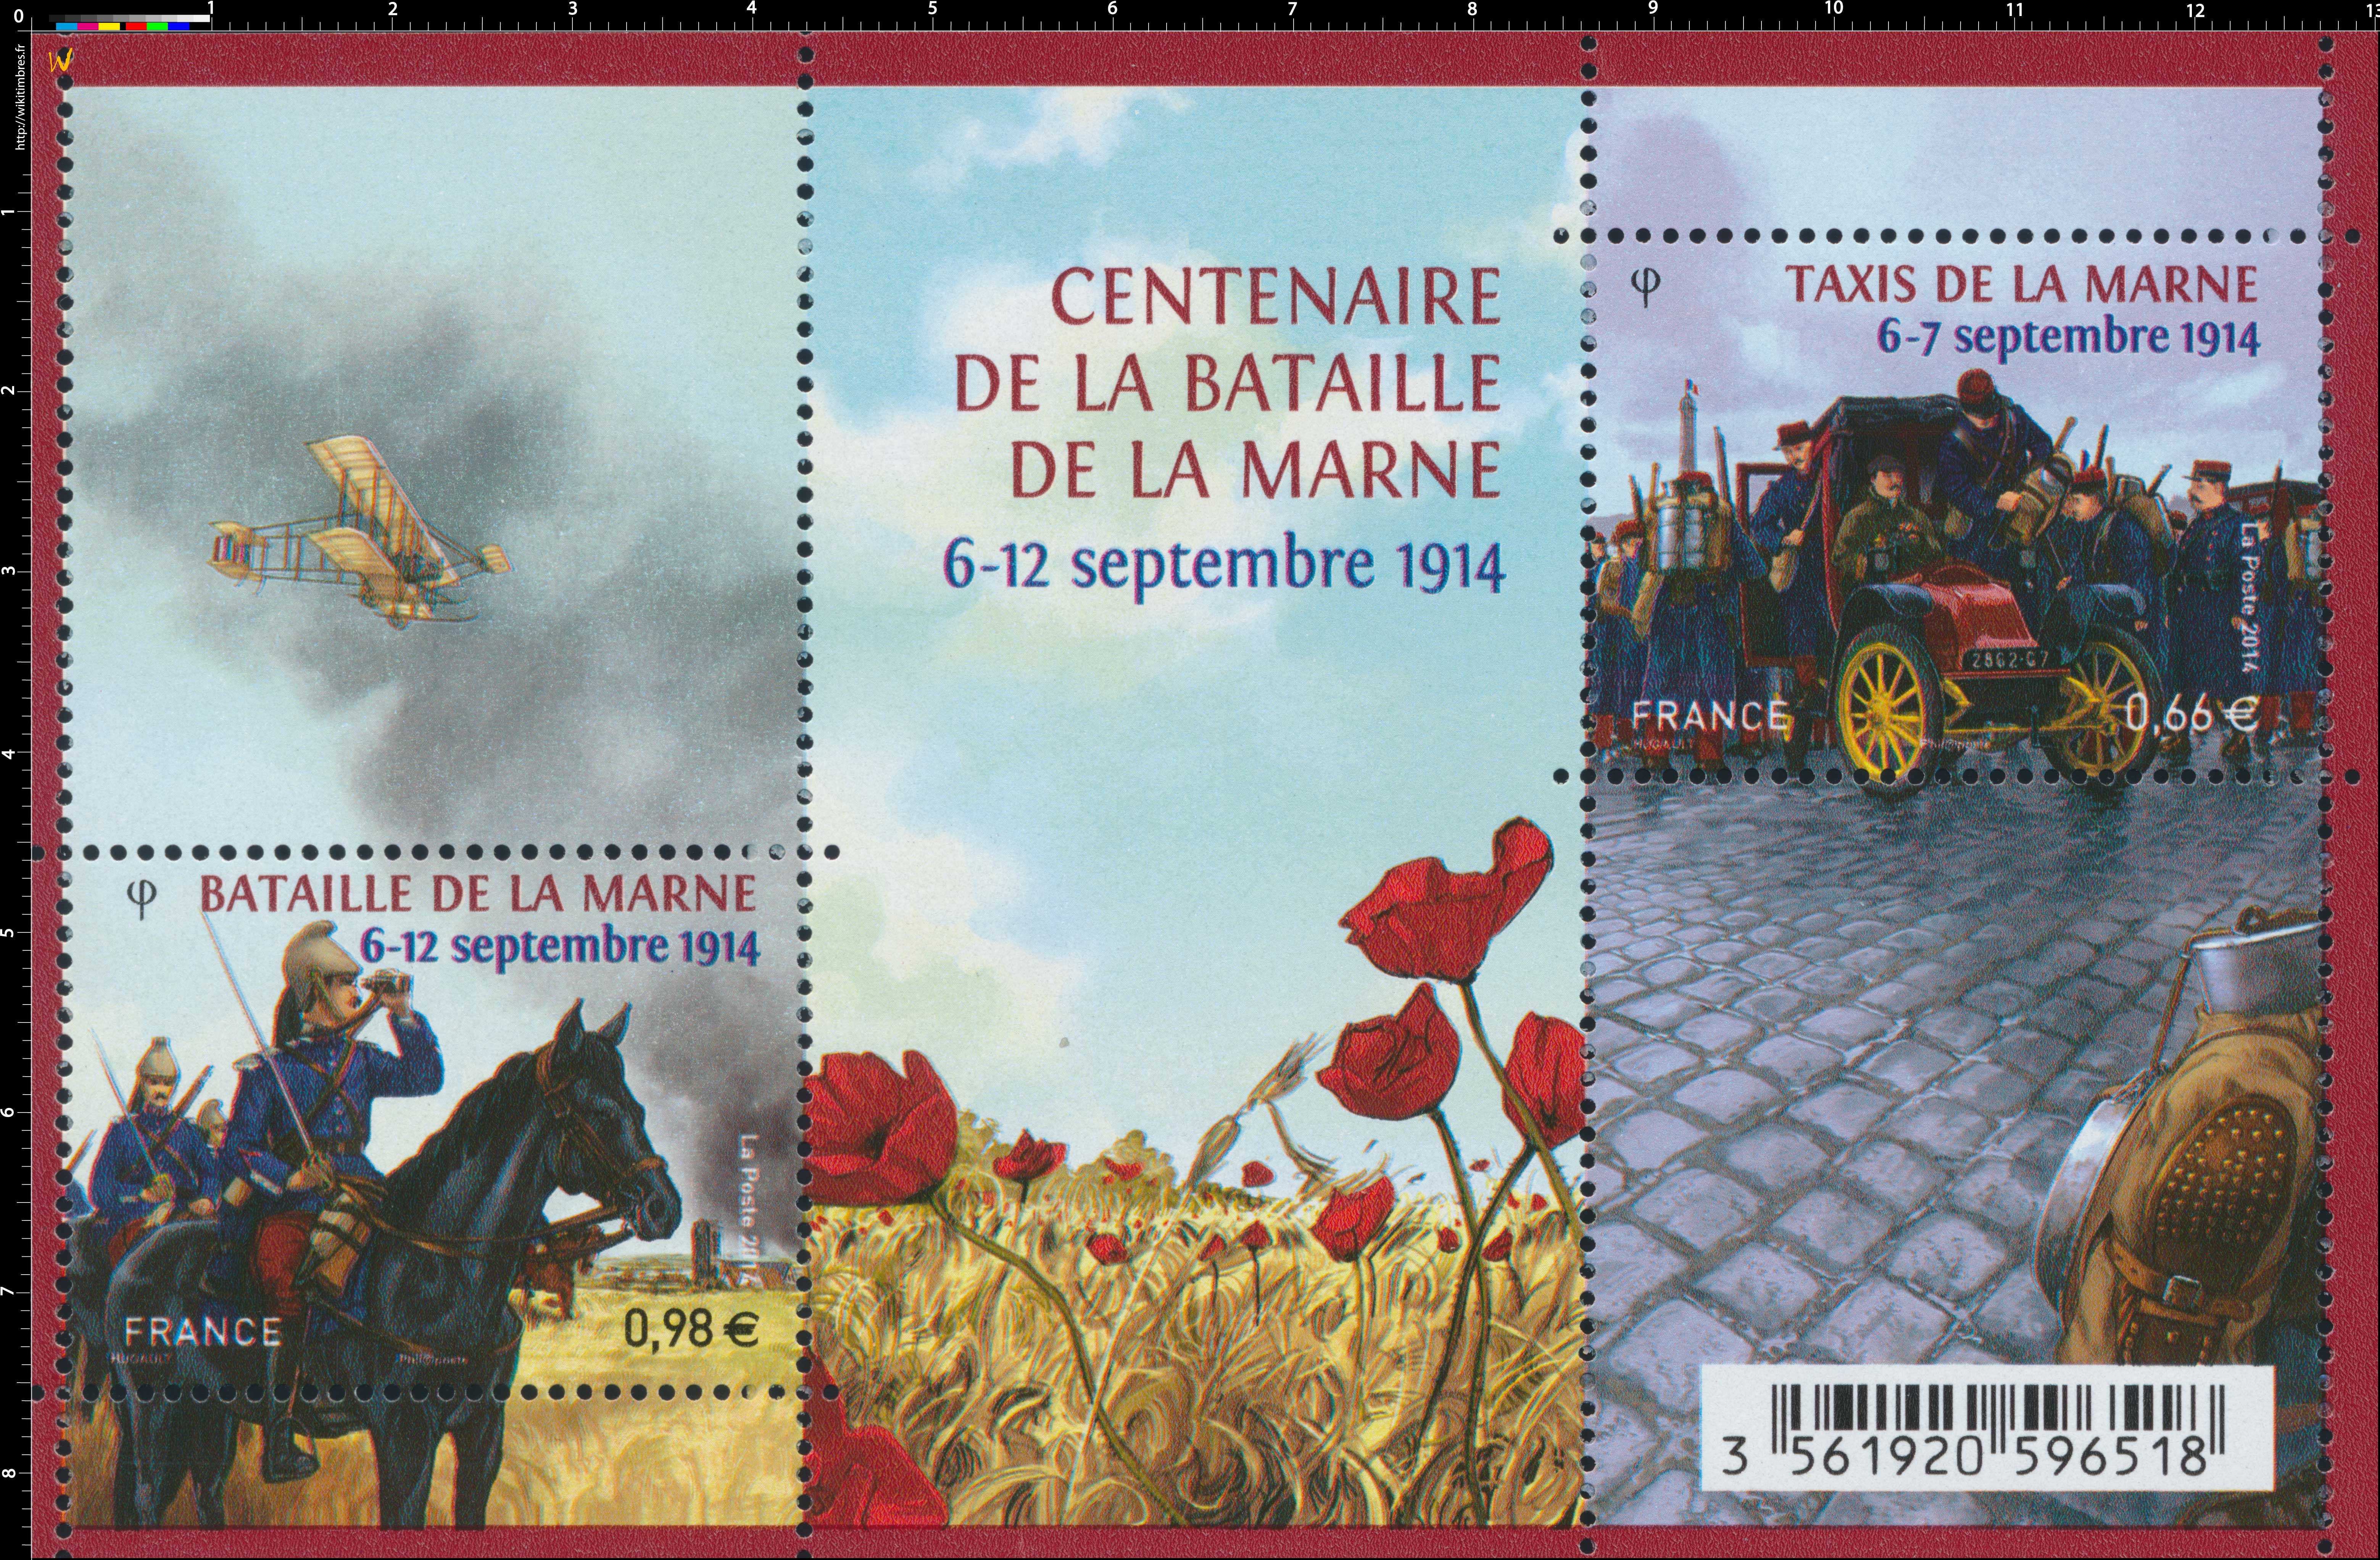 2014 CENTENAIRE DE LA BATAILLE DE LA MARNE 6-12 septembre 1914